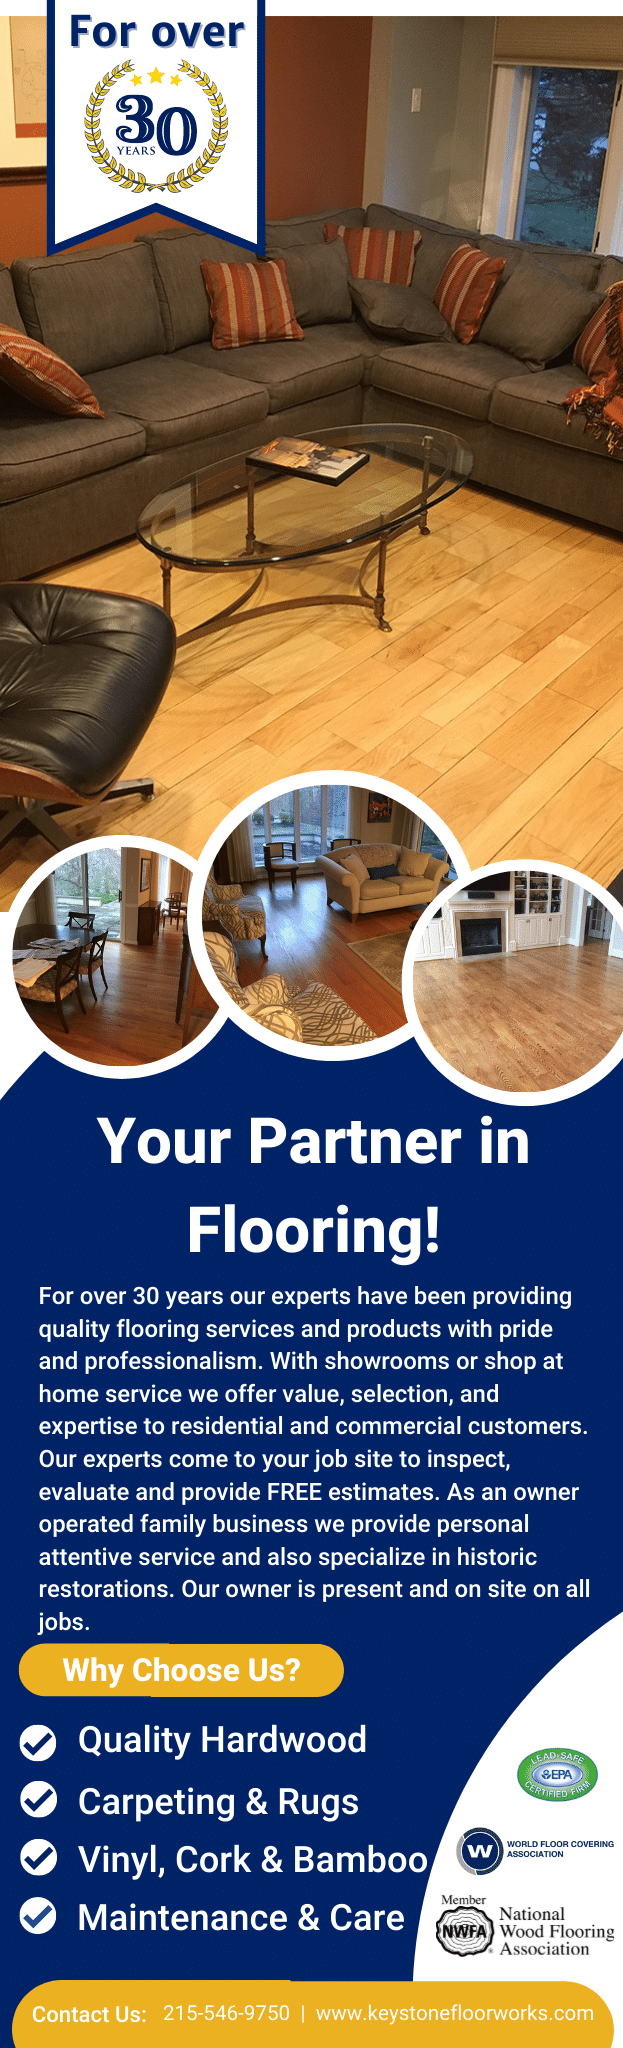 Your Partner in Flooring! 1